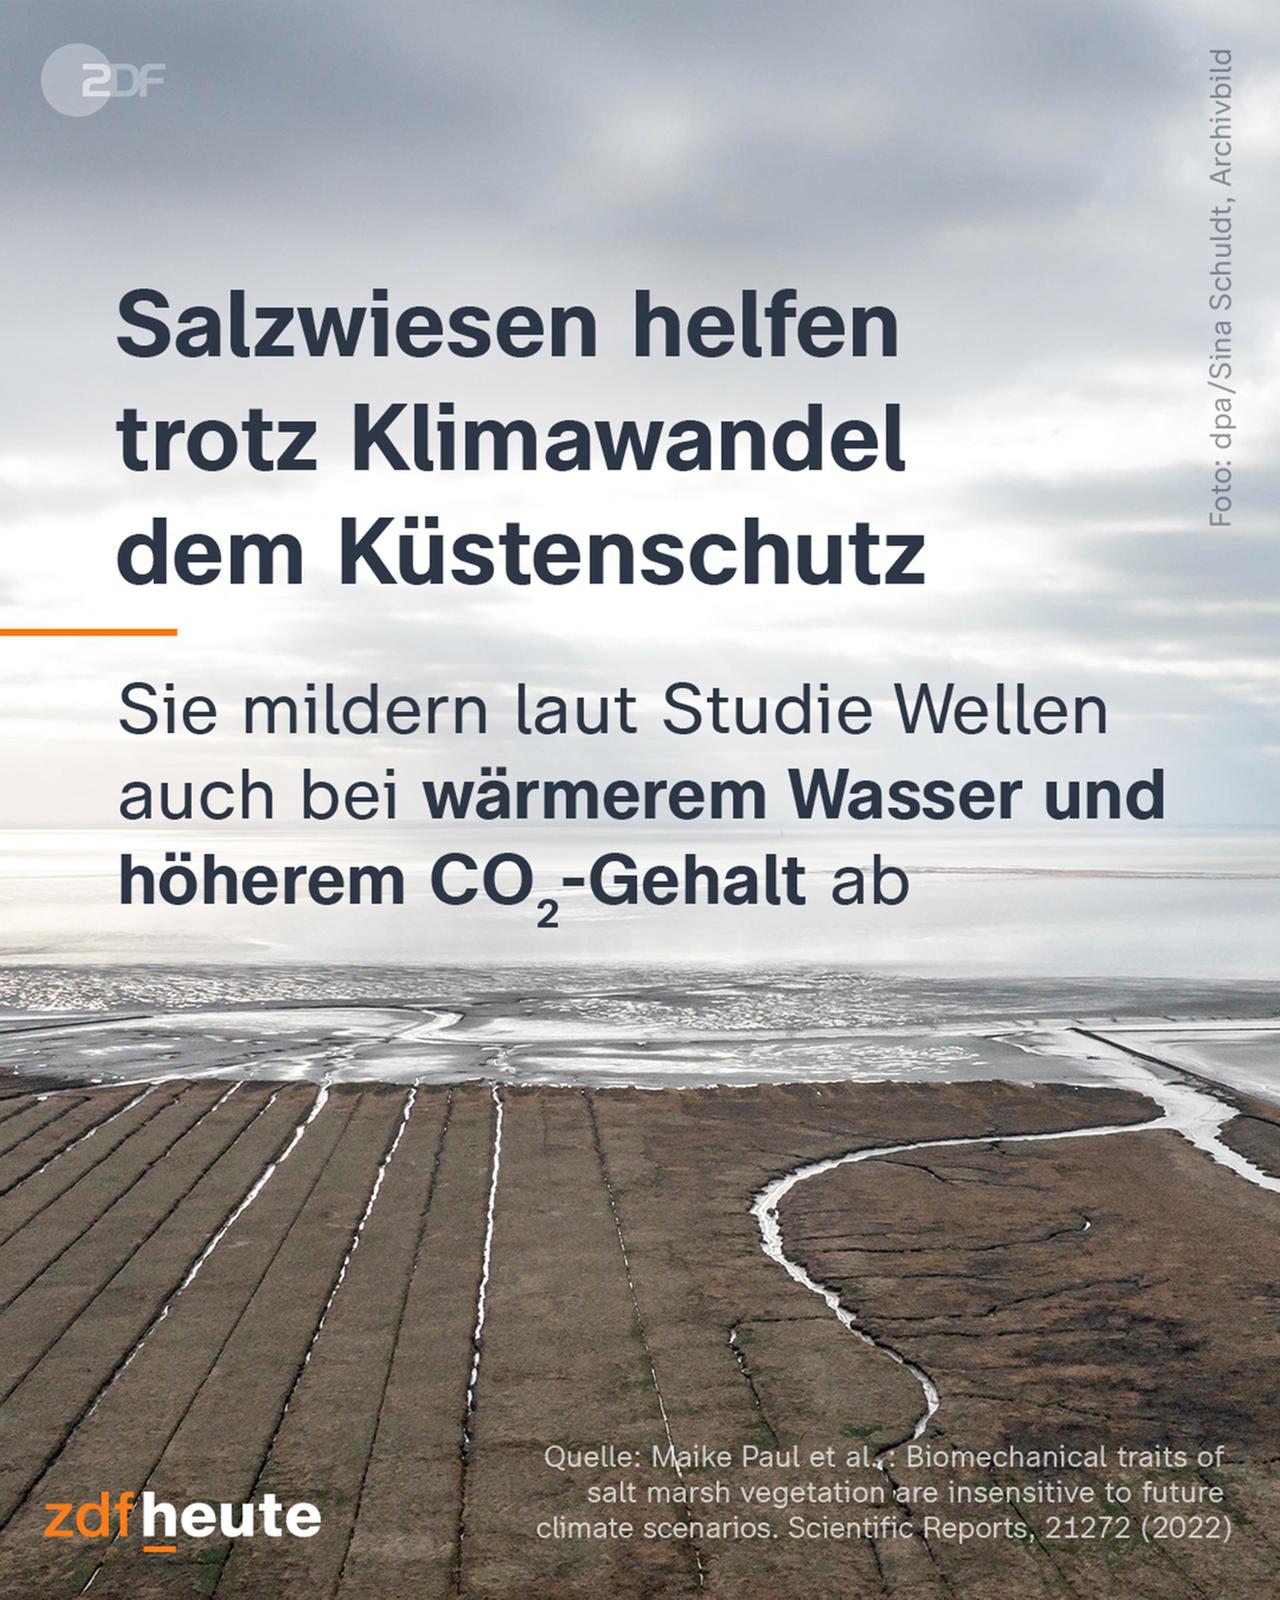 Salzwiesen helfen trotz Klimawandel dem Küstenschutz